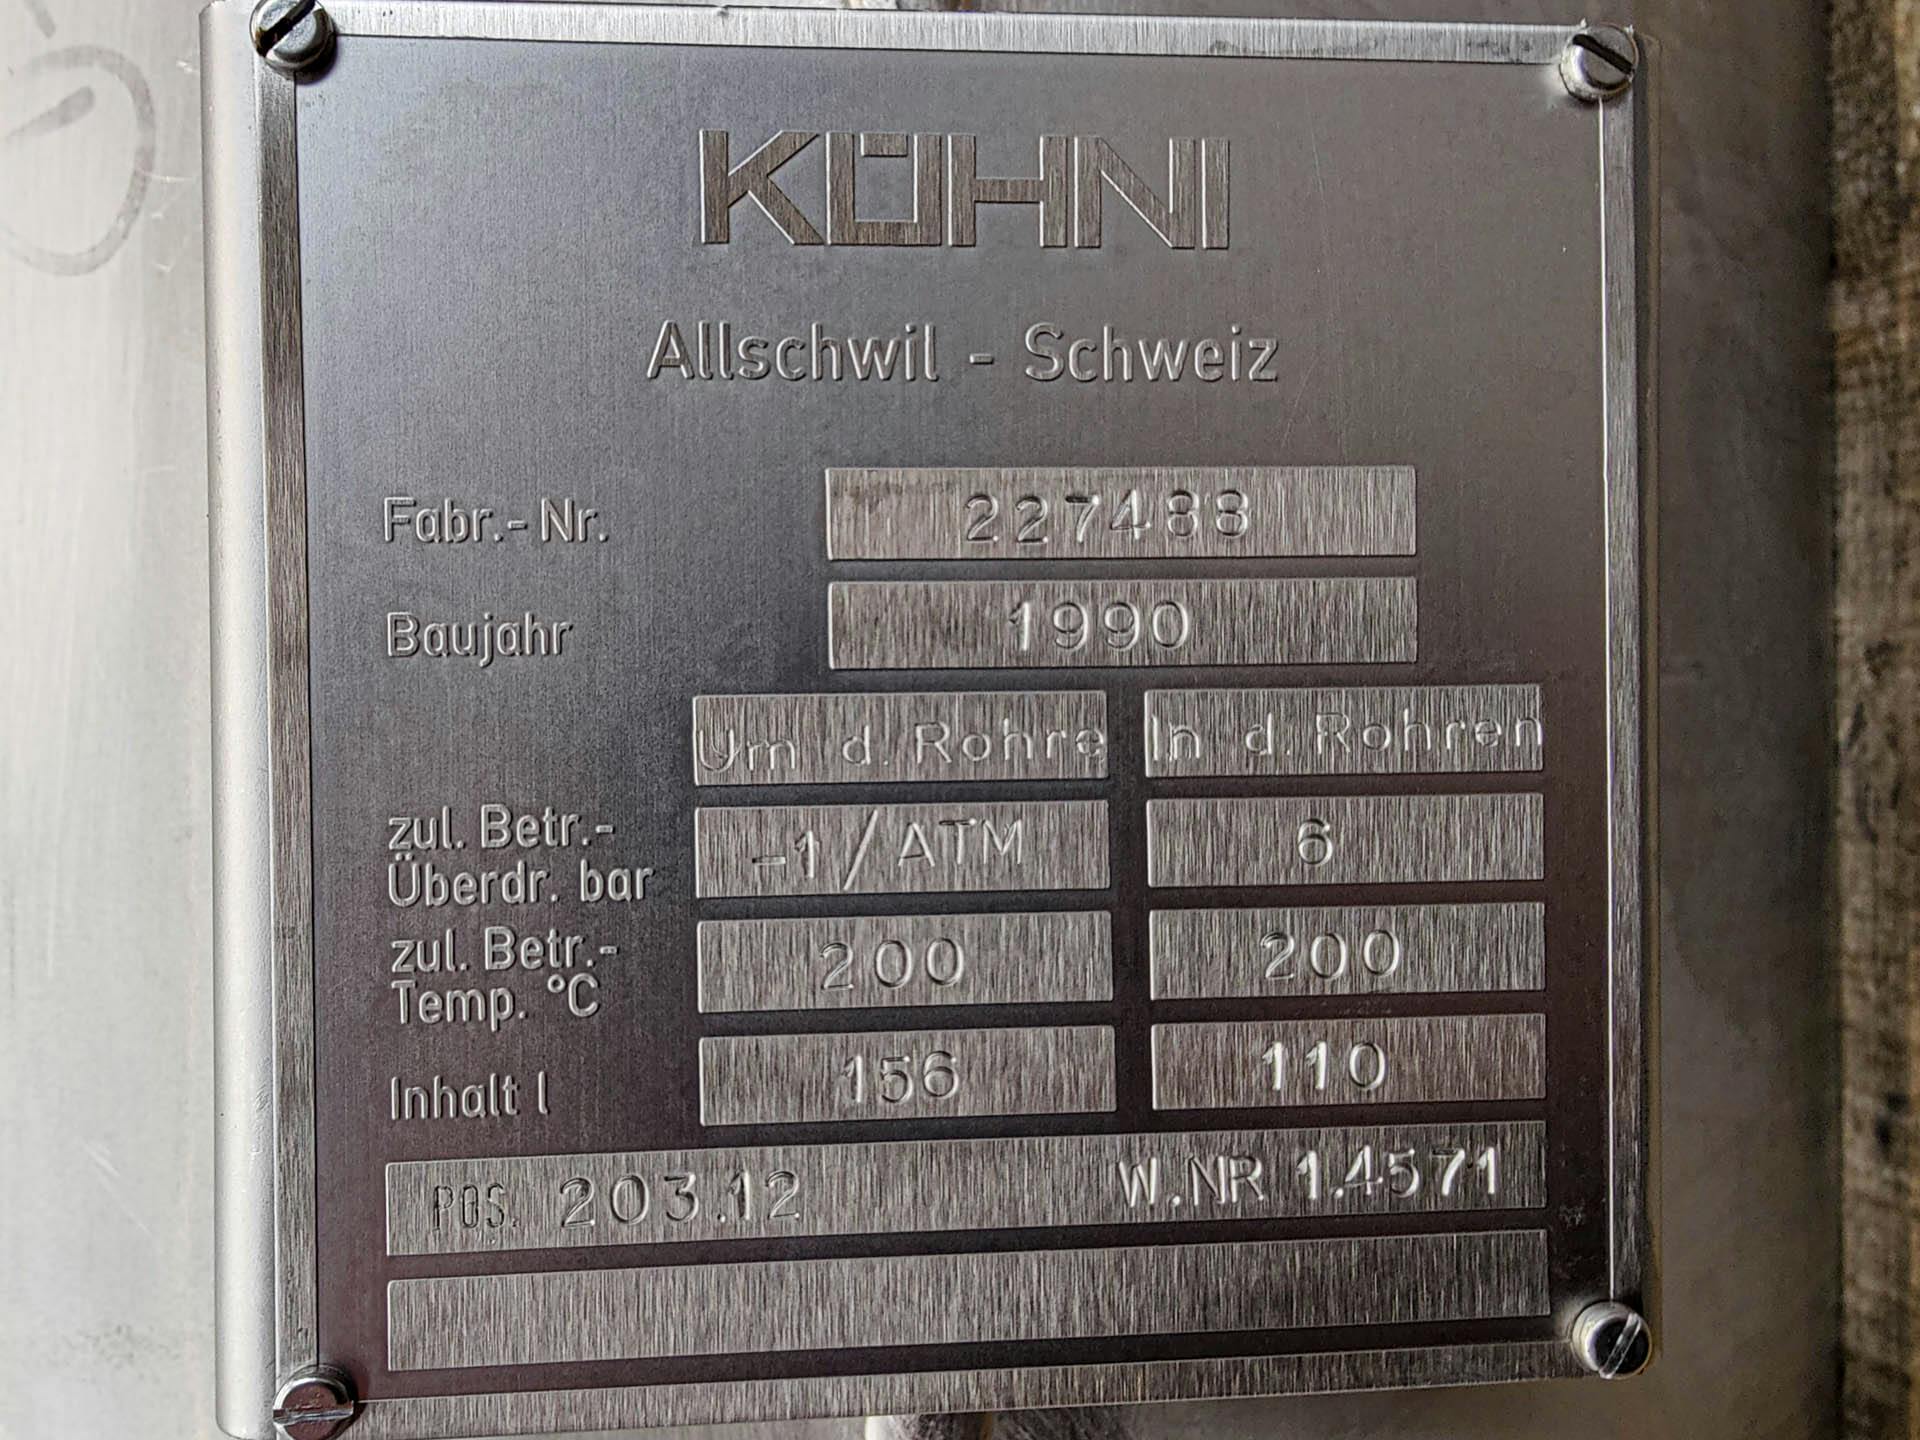 Kuehni condensor - Intercambiador de calor de carcasa y tubos - image 9